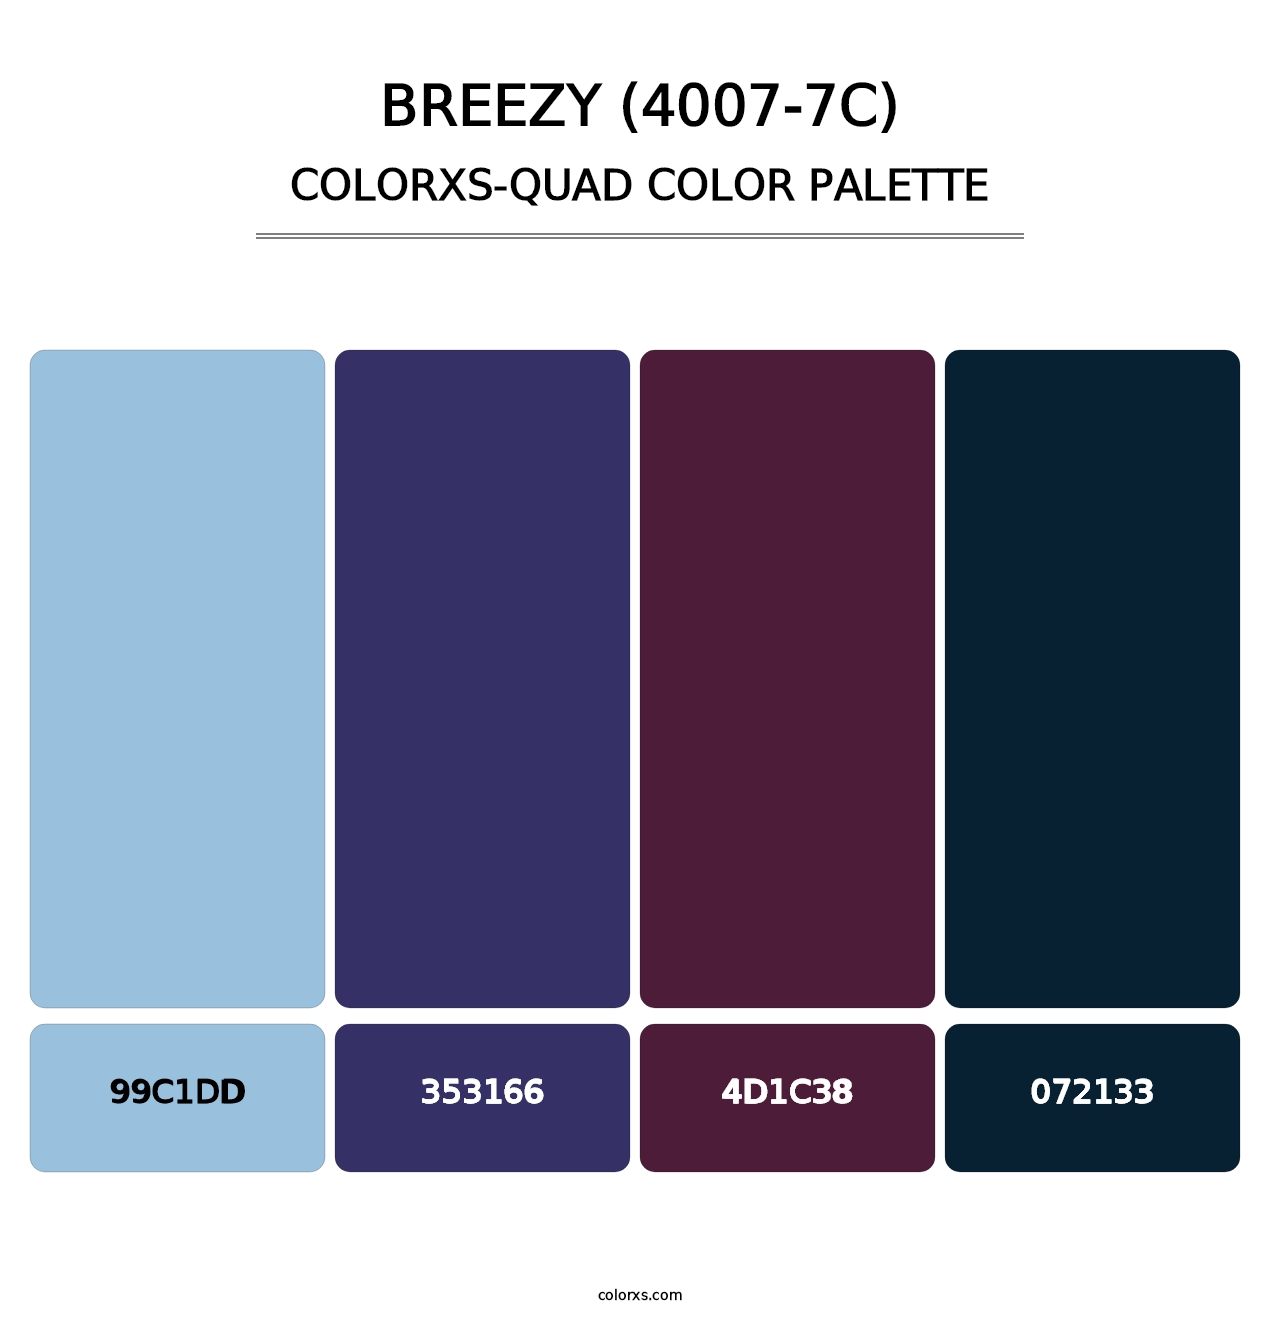 Breezy (4007-7C) - Colorxs Quad Palette